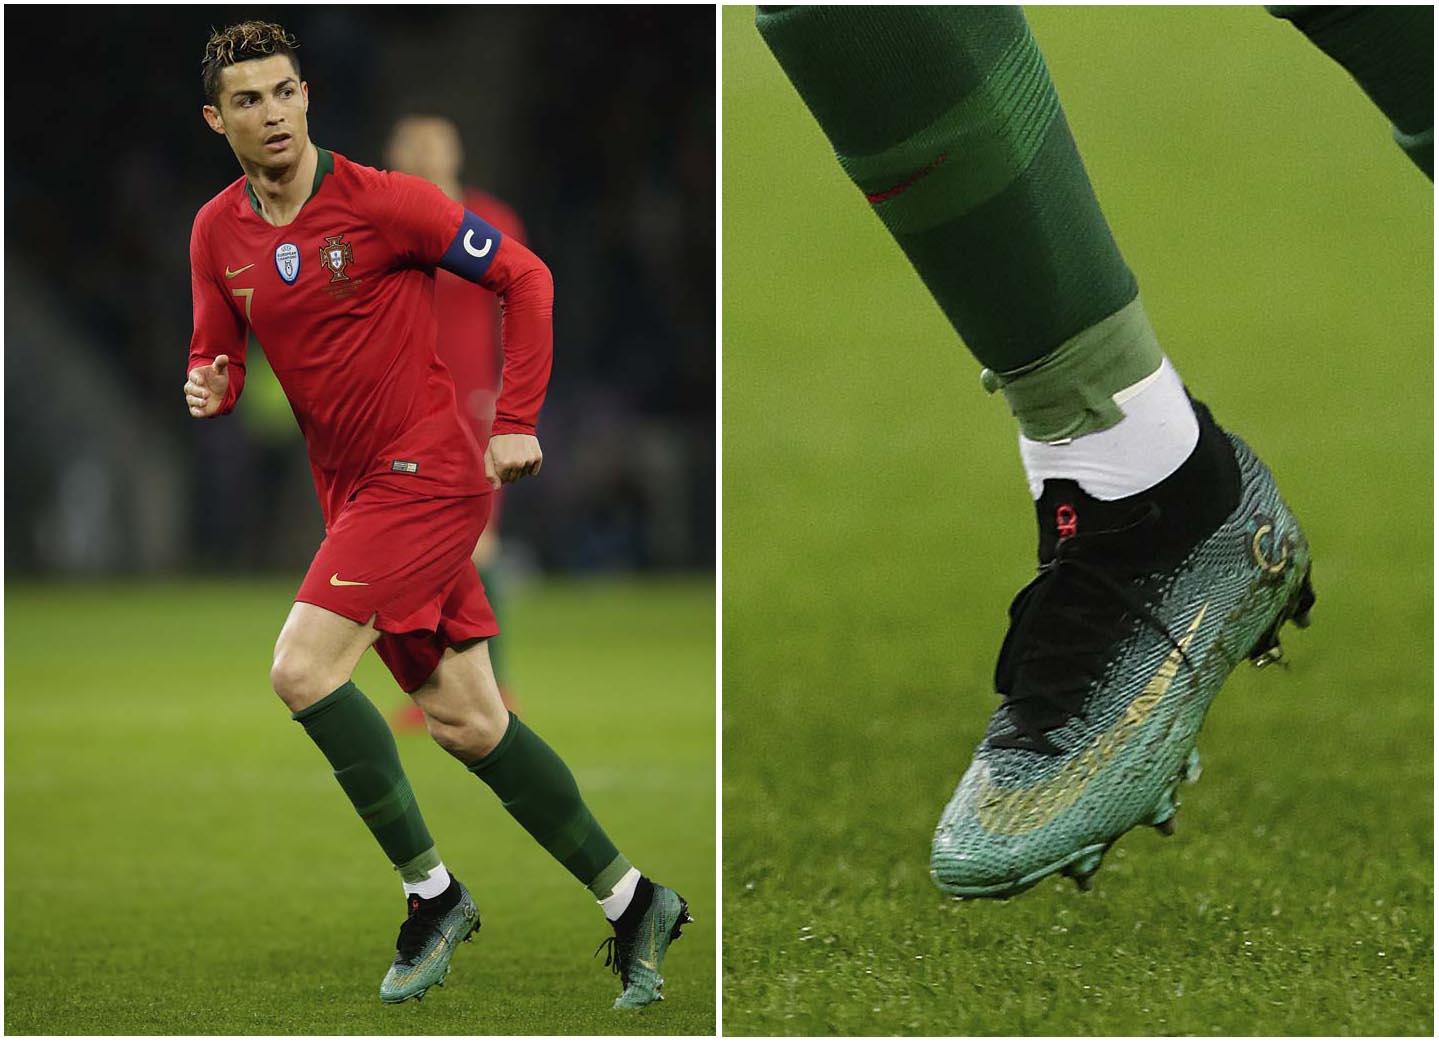 Ronaldo mang lên chân giày Nike Mercurial Superfly CR7 "Born Leader" tại Euro 2016